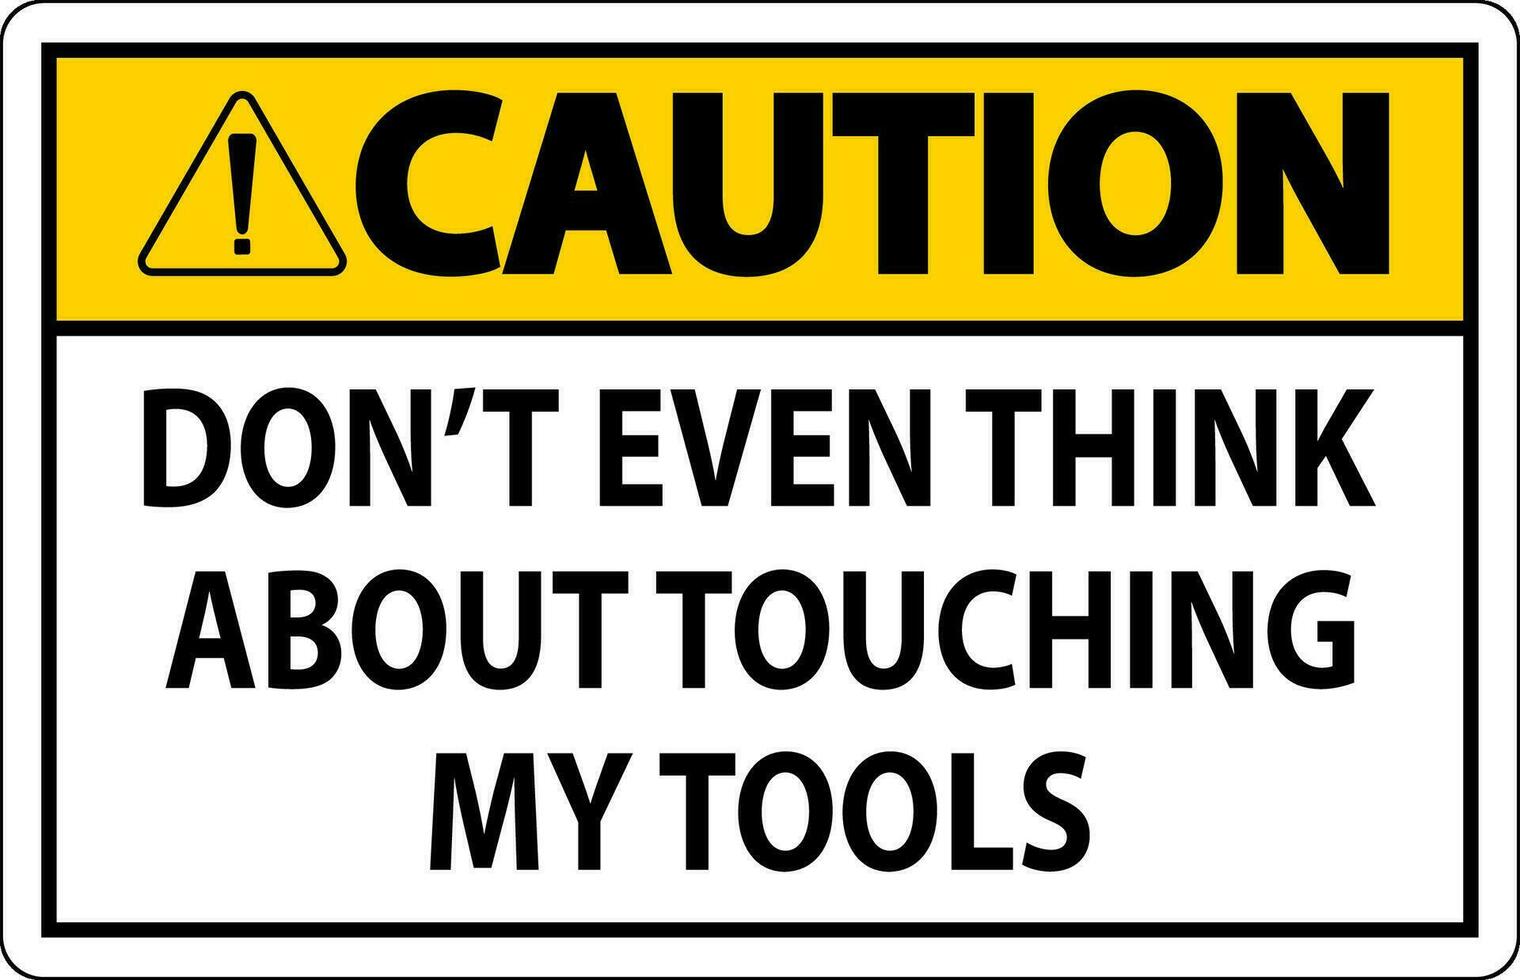 mise en garde signe faire ne pas toucher le outils vecteur